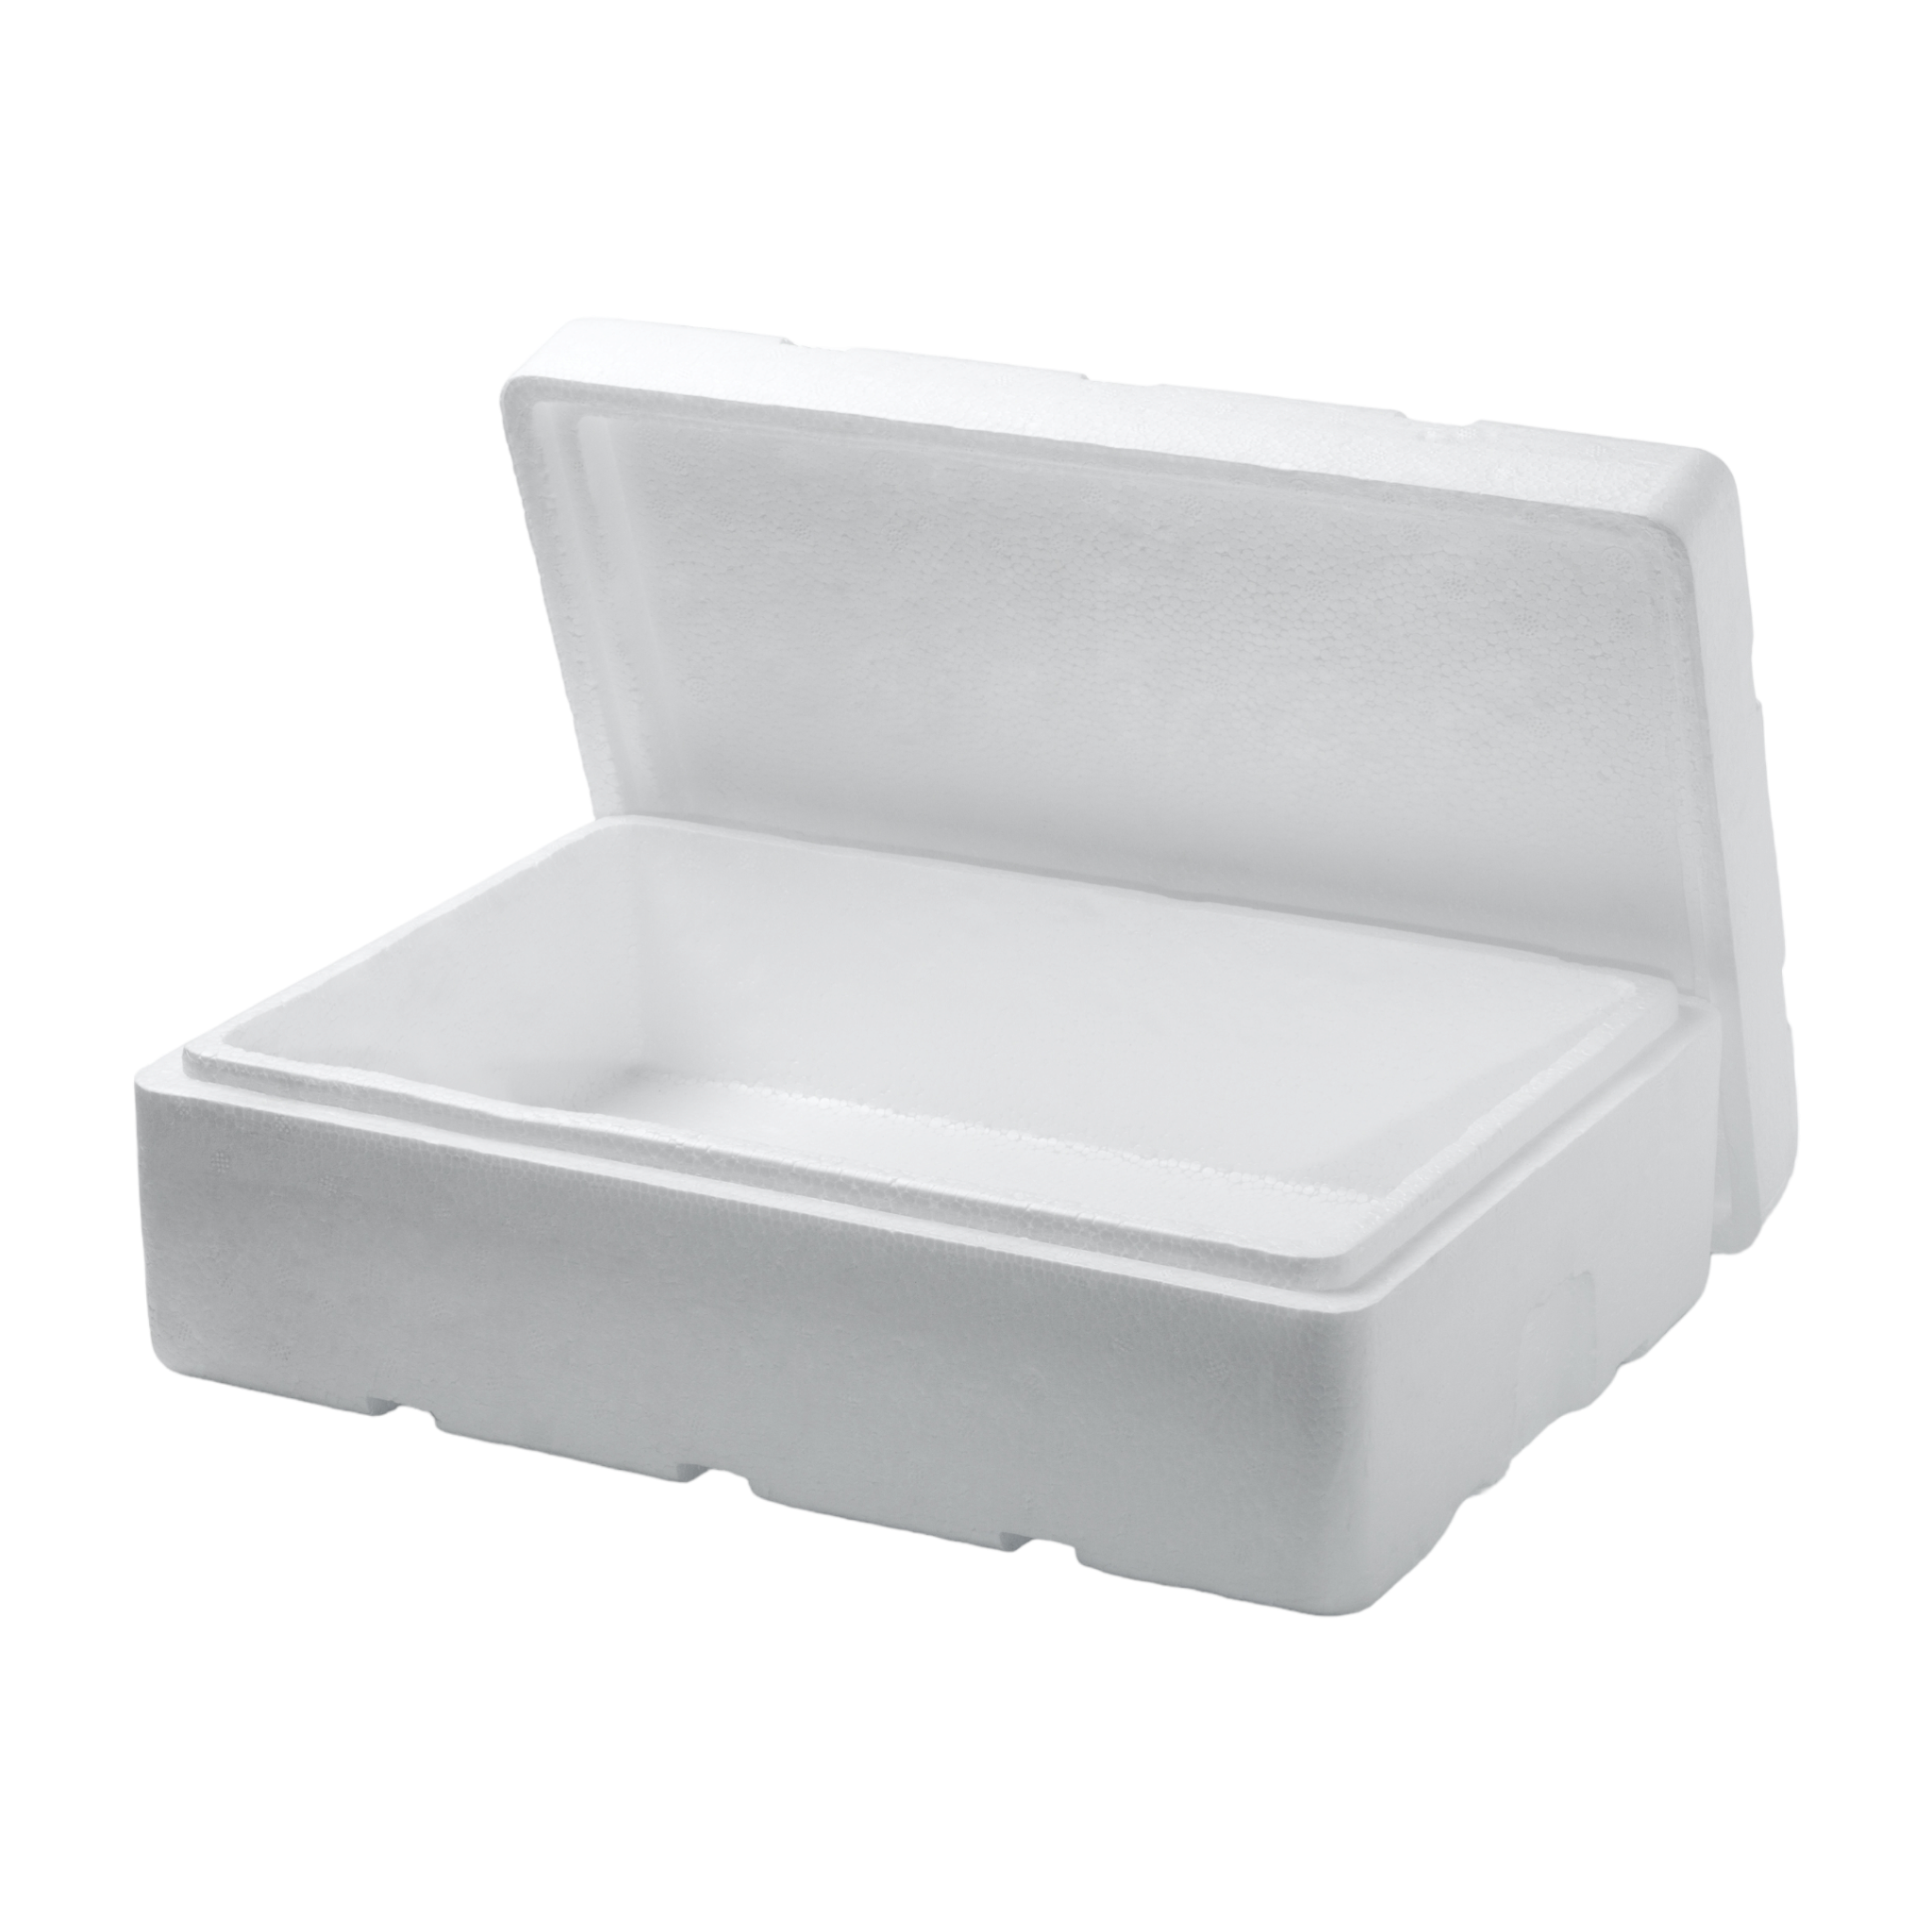 Polystyrene Cooler Box 10kg Thermal Storage Box